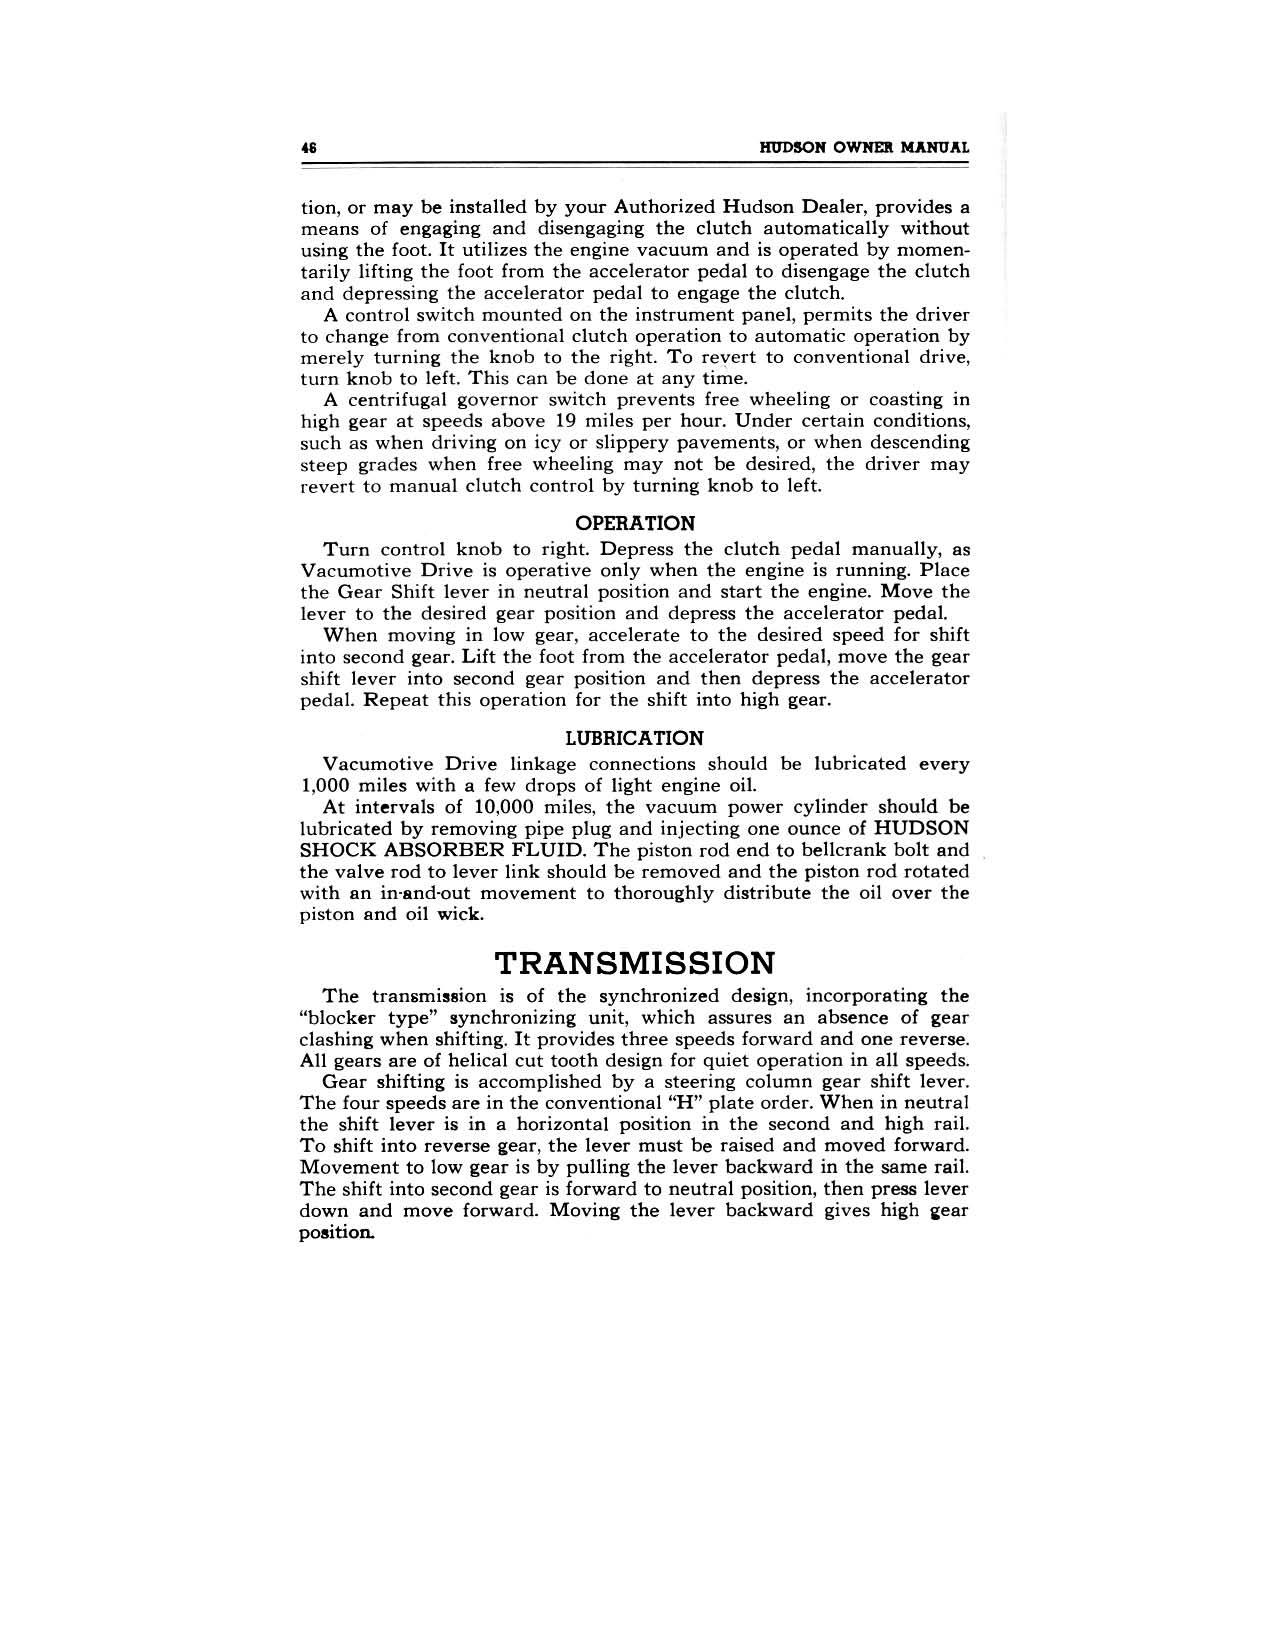 1949 Hudson Owners Manual-48